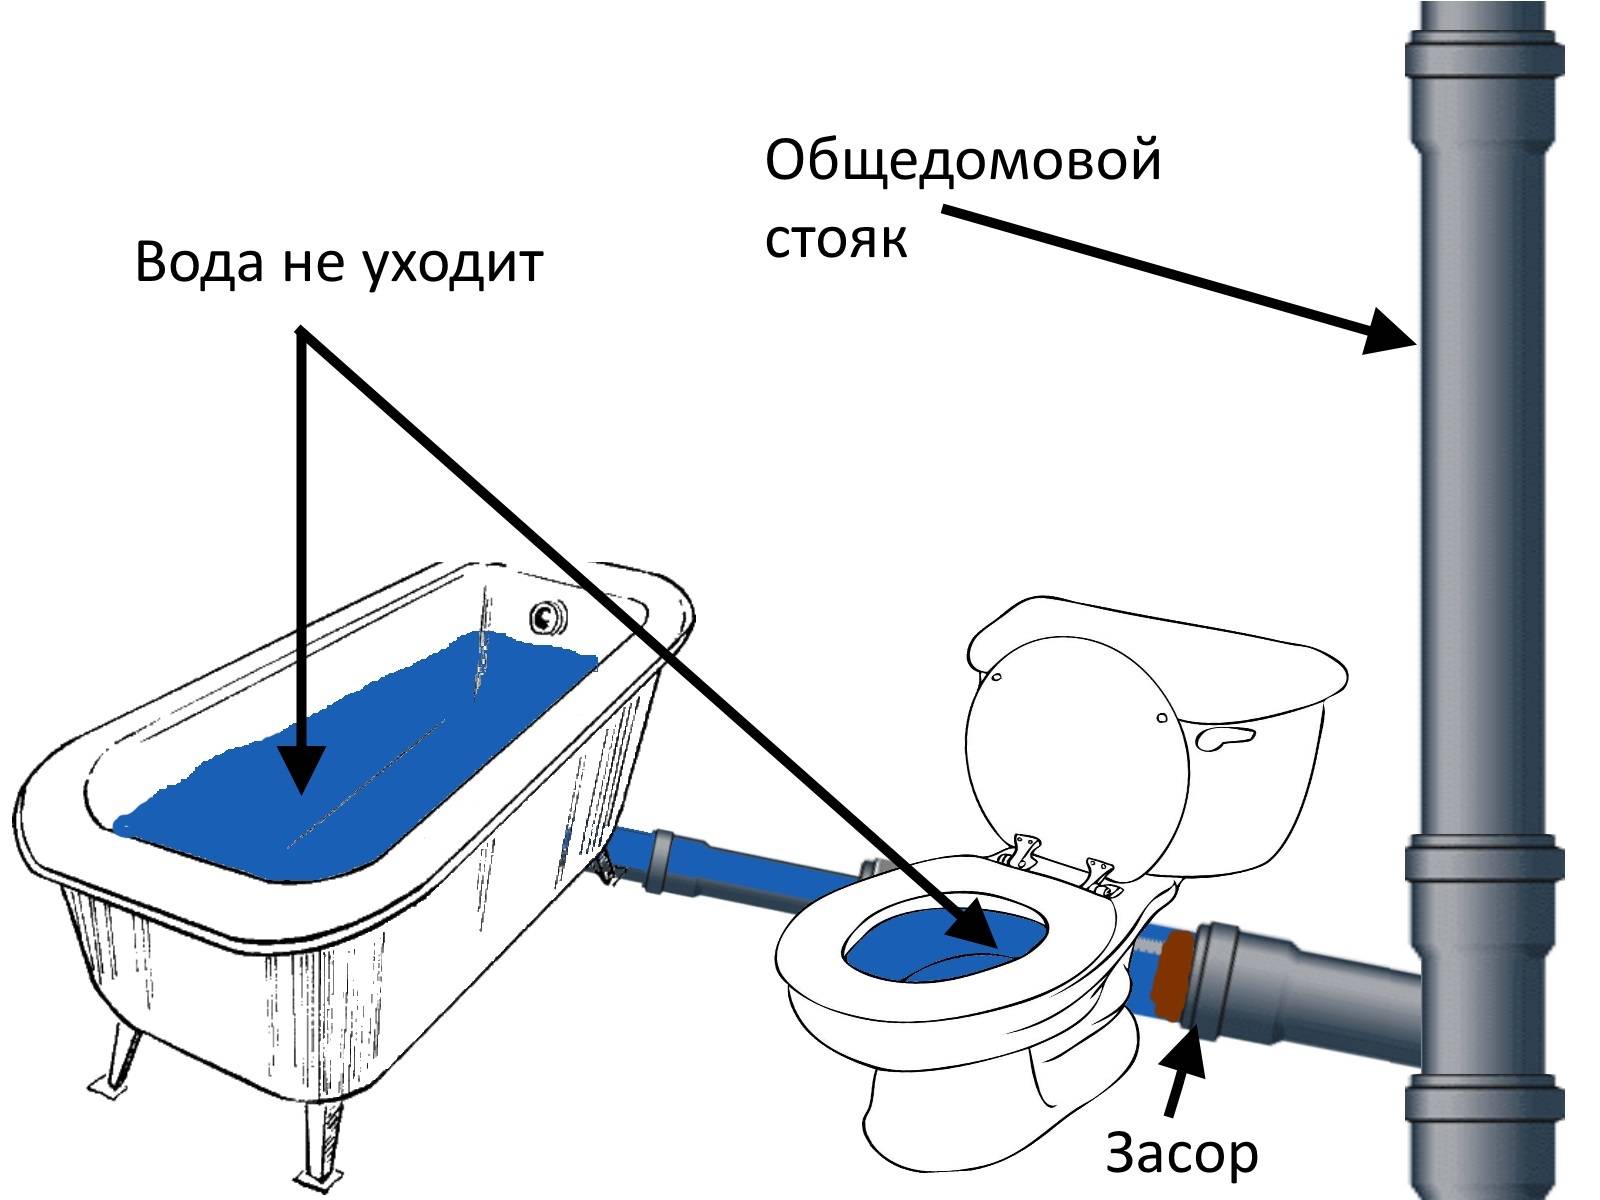 Как прочистить канализационные трубы и устранить засор: лучшие способы - vodatyt.ru